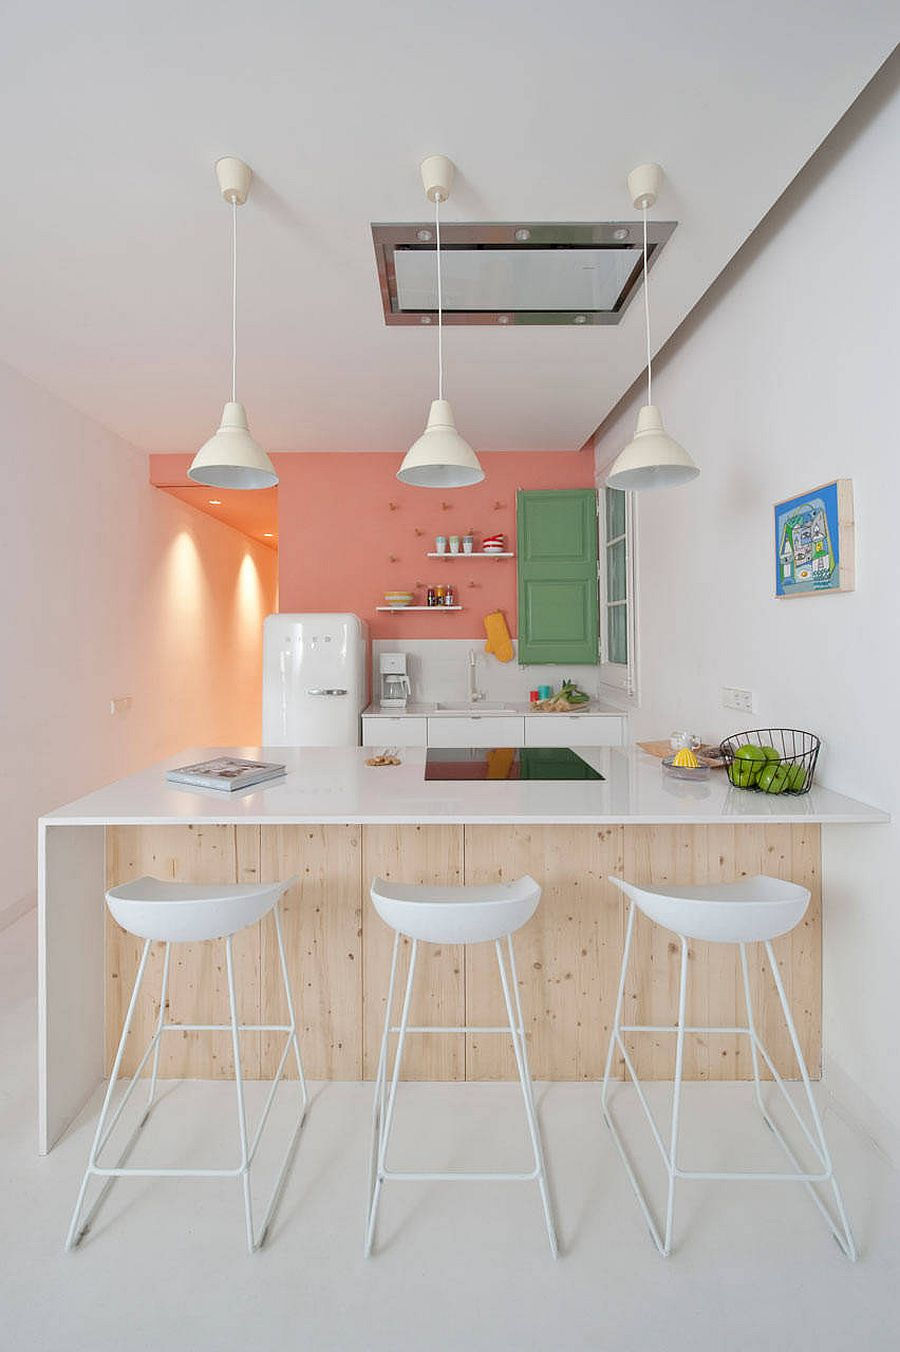   Màu hồng pastel và màu xanh lá cây mang lại màu sắc cho nhà bếp cổ điển sang trọng.  